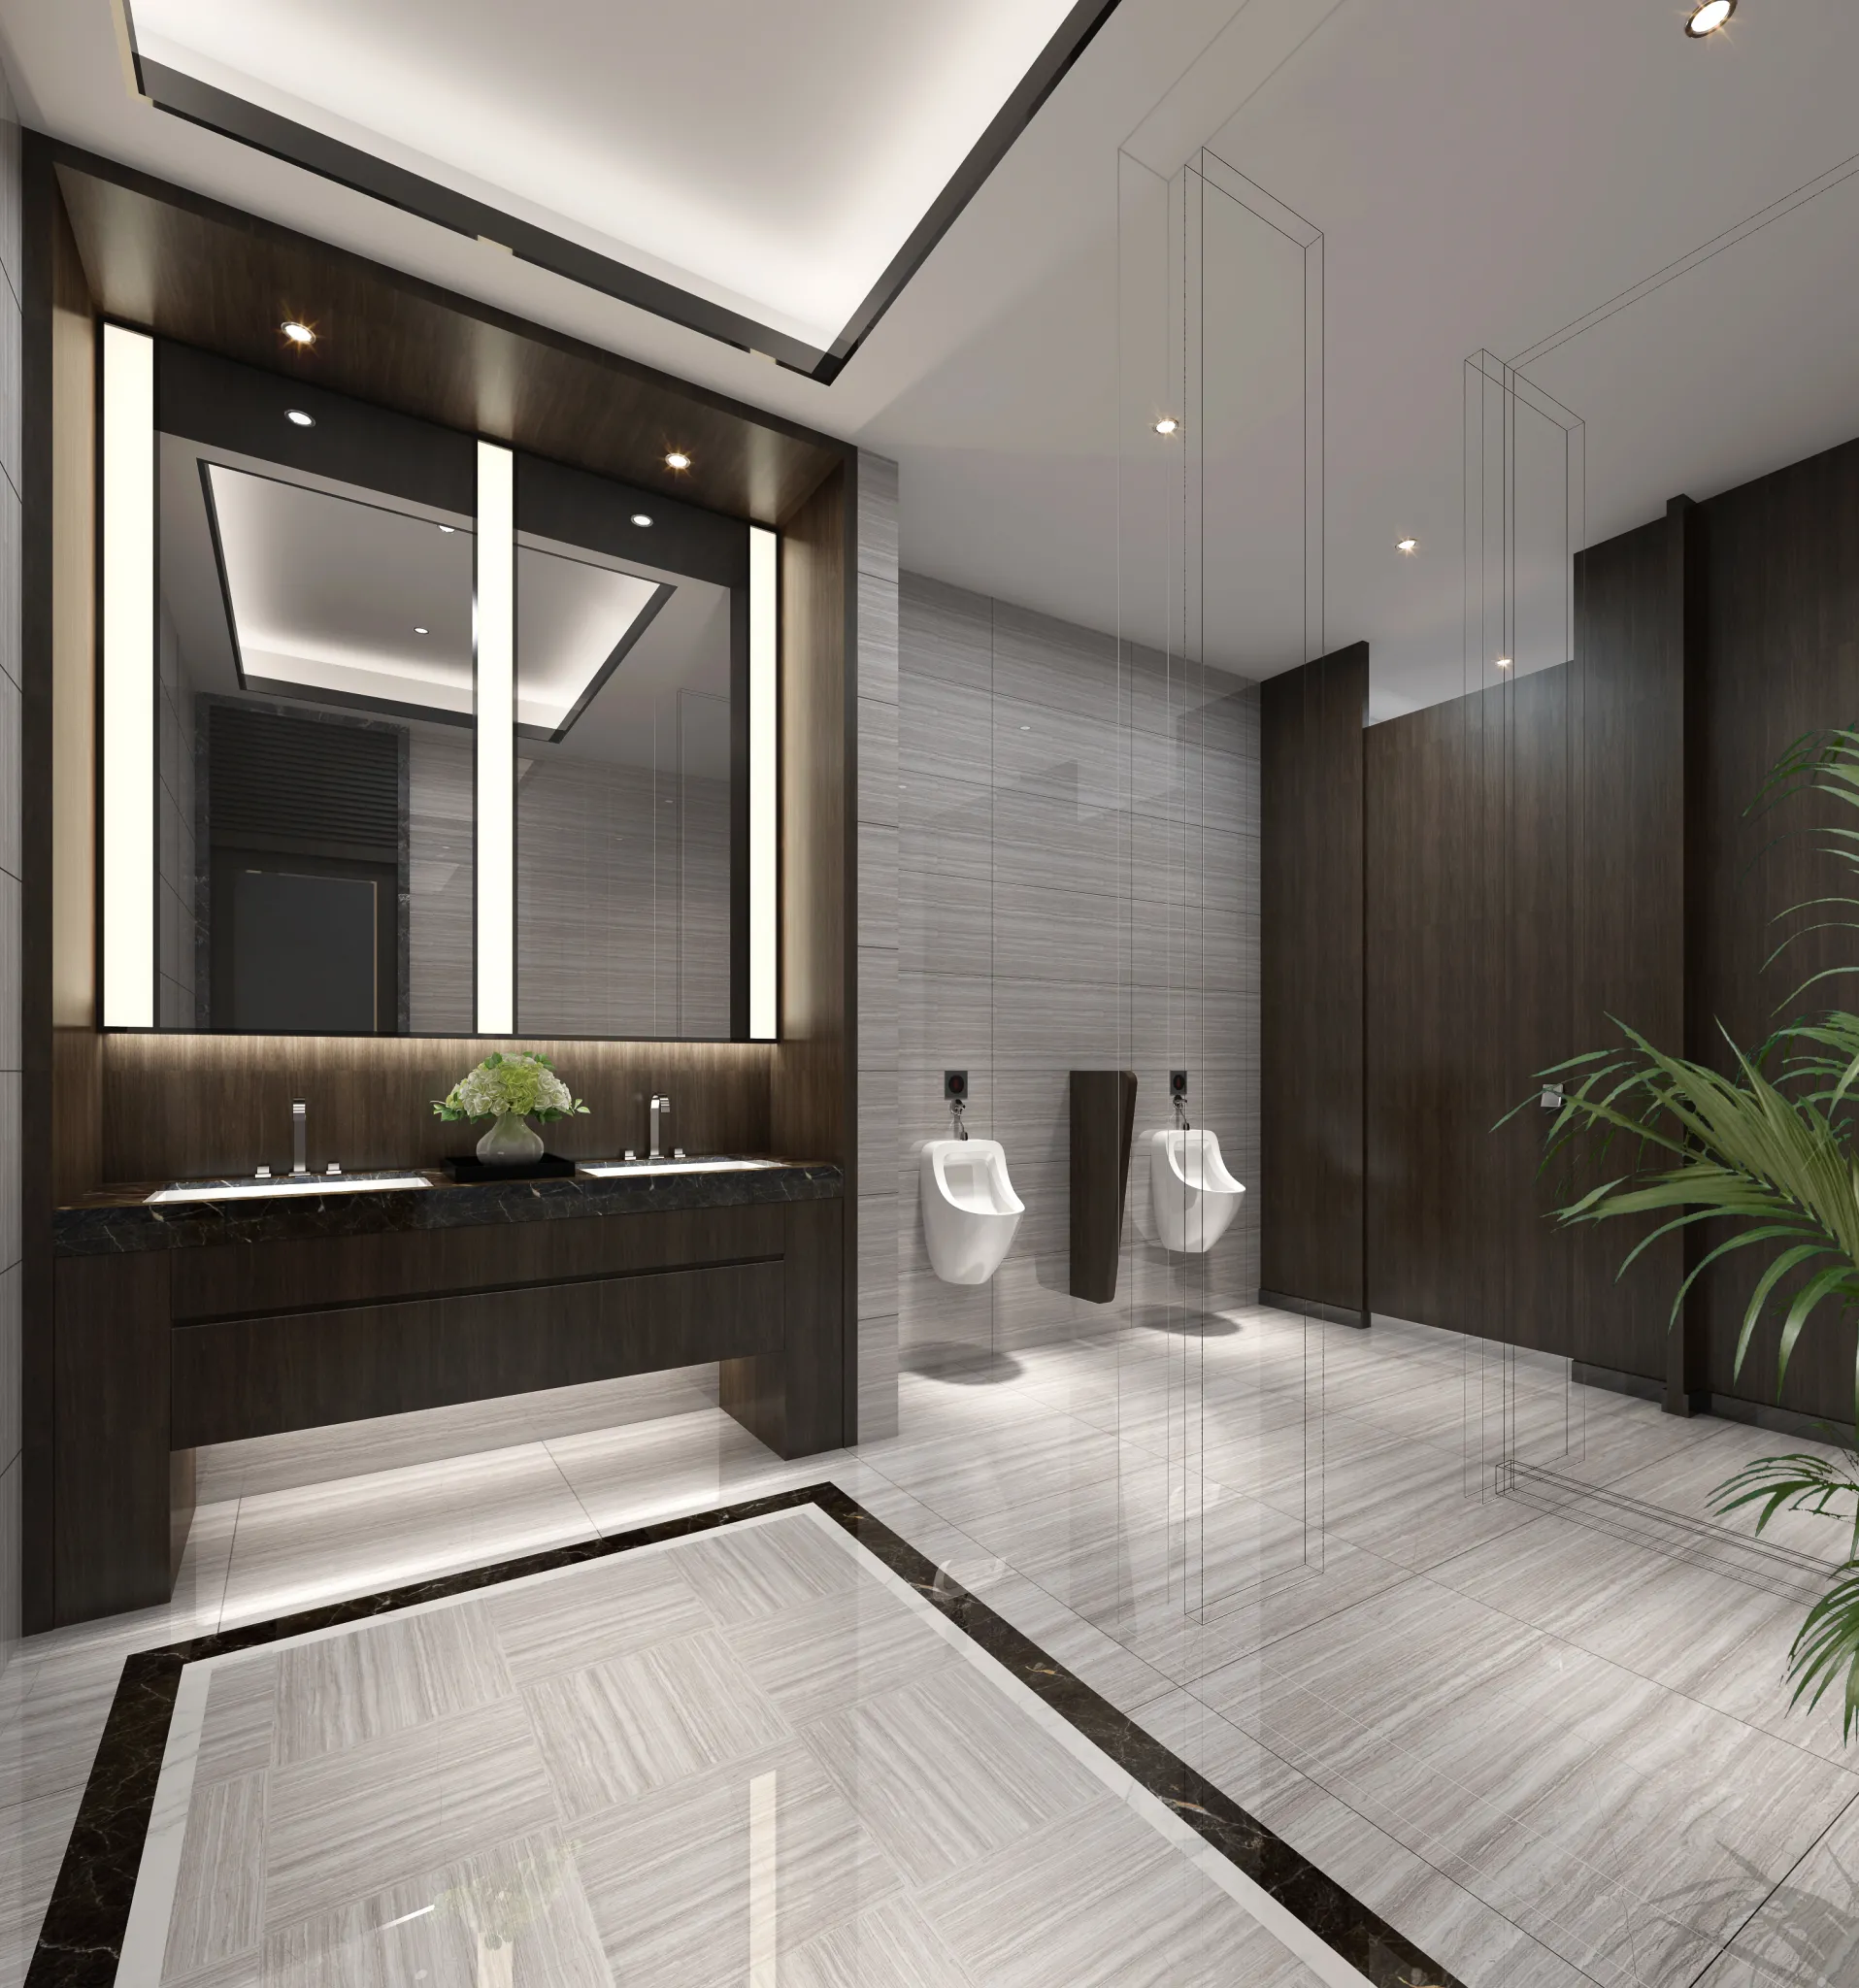 Cooldesign Interior 20 – Public Space – HOTEL – 16